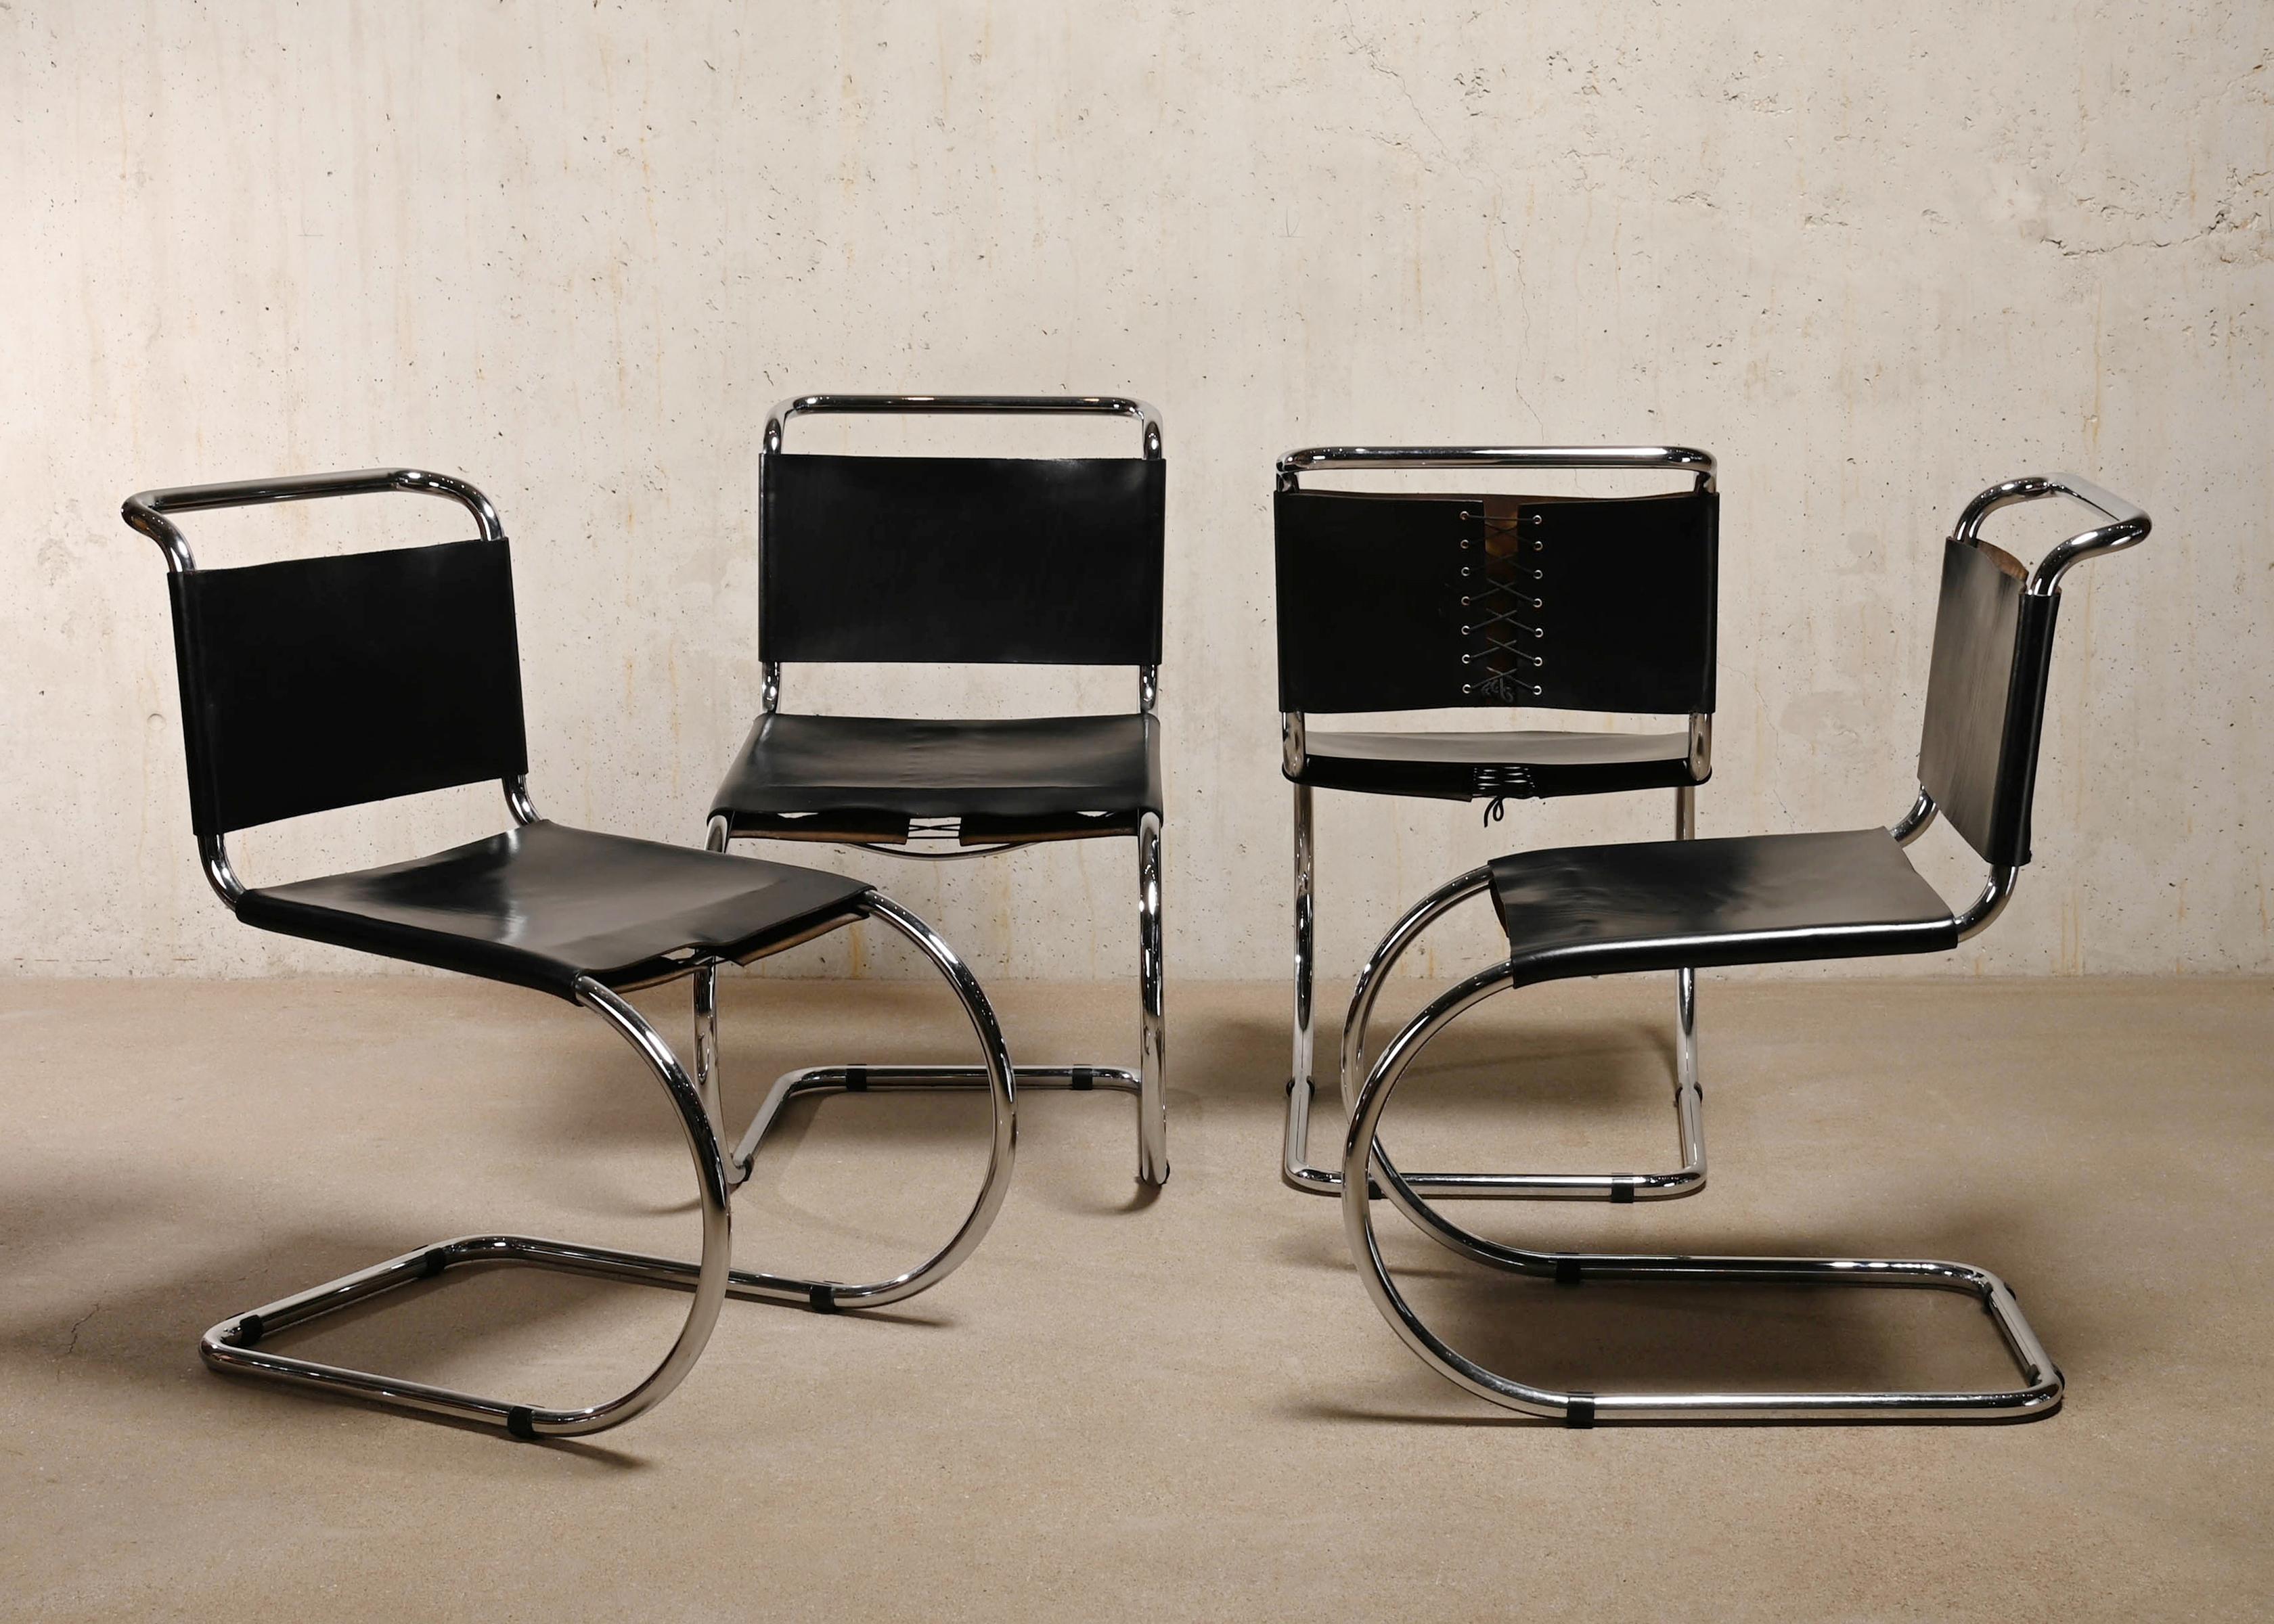 Ensemble iconique de chaises cantilever MR 10 (256CS) conçu par Mies van der Rohe pour Gavina. Cadre tubulaire en acier chromé, assise et dossier en cuir noir. Le cuir est en très bon état, non desséché et encore souple. Fonctionne toujours très